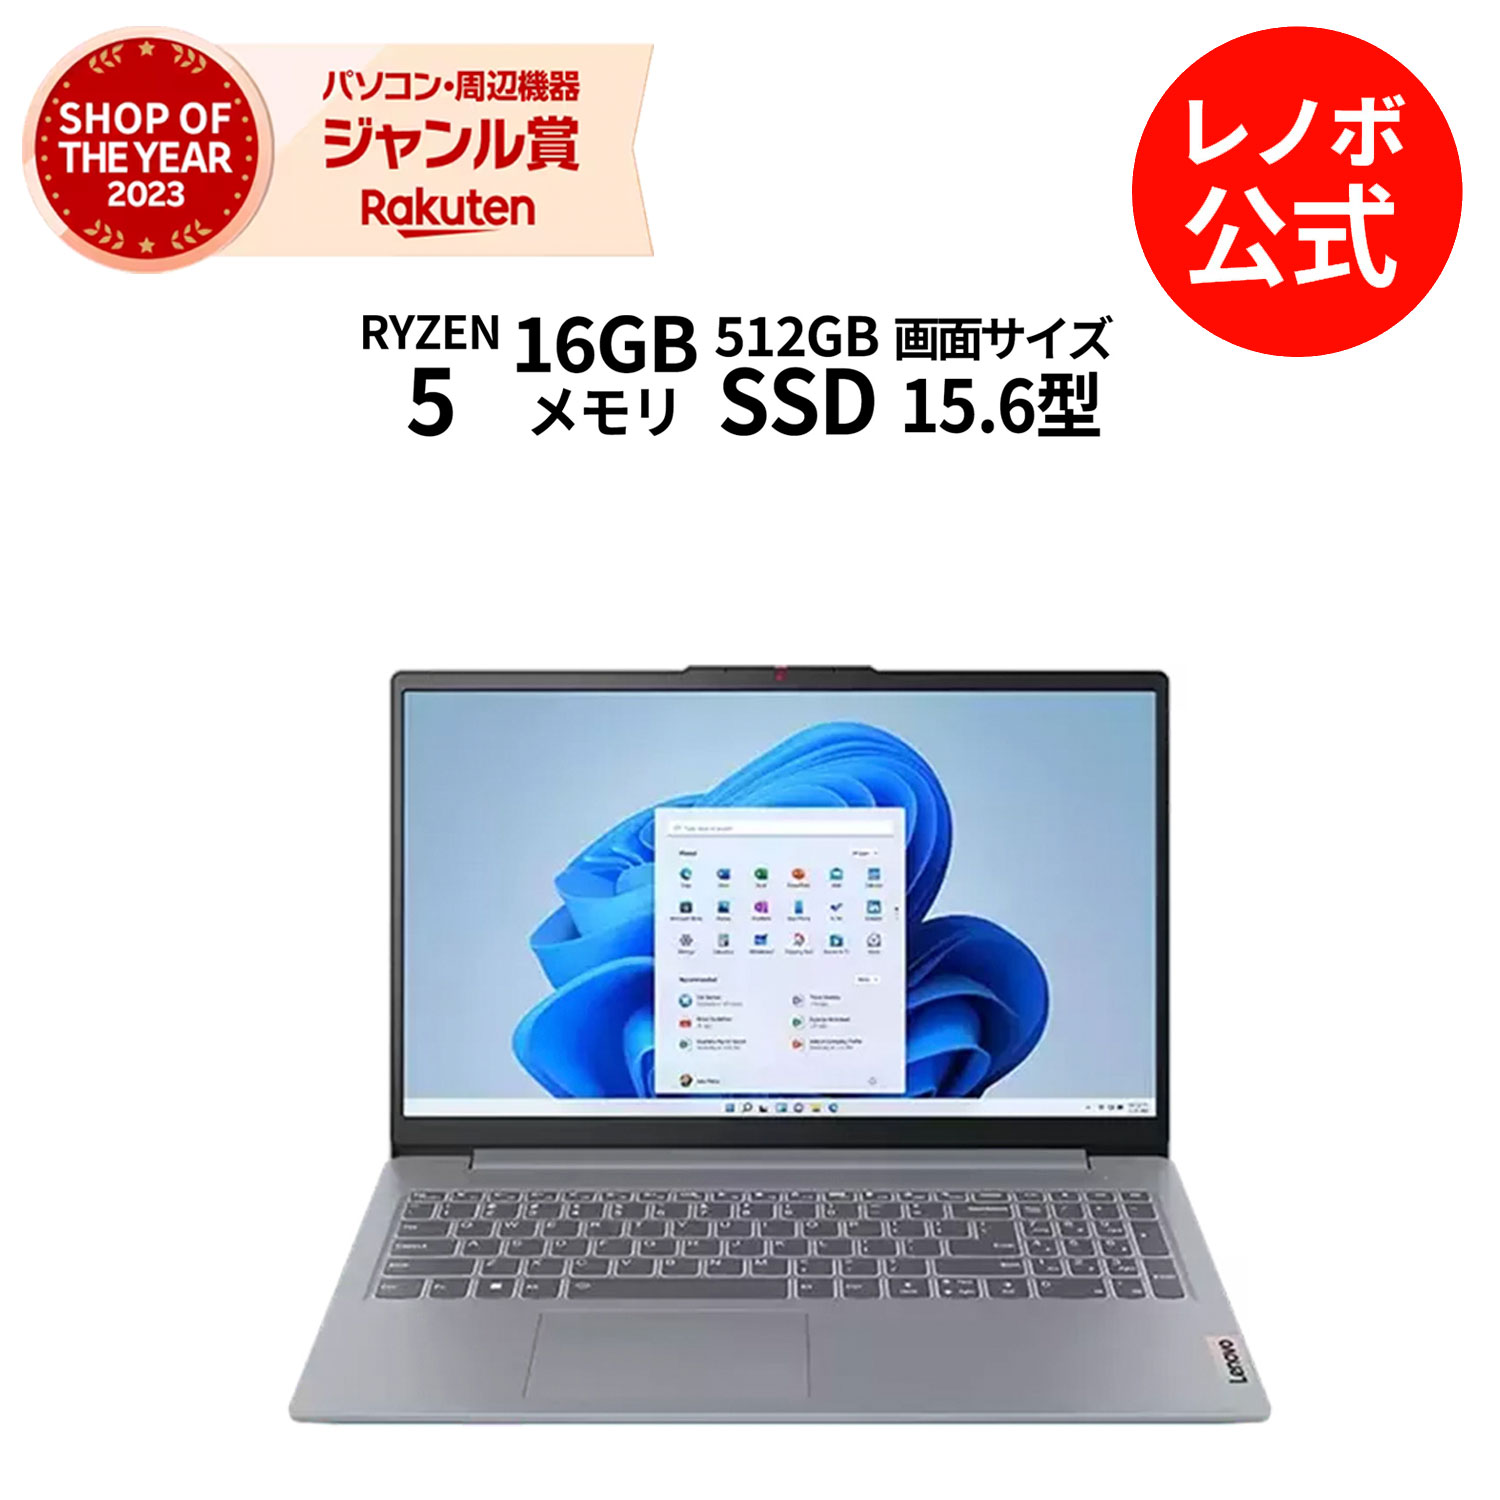 【中古】Acer ノートパソコン Spin 5 SP513-52N-N78U (Core i7/8GB/256GB SSD/ドライブなし/13.3型/Windows 10/スチールグレイ)